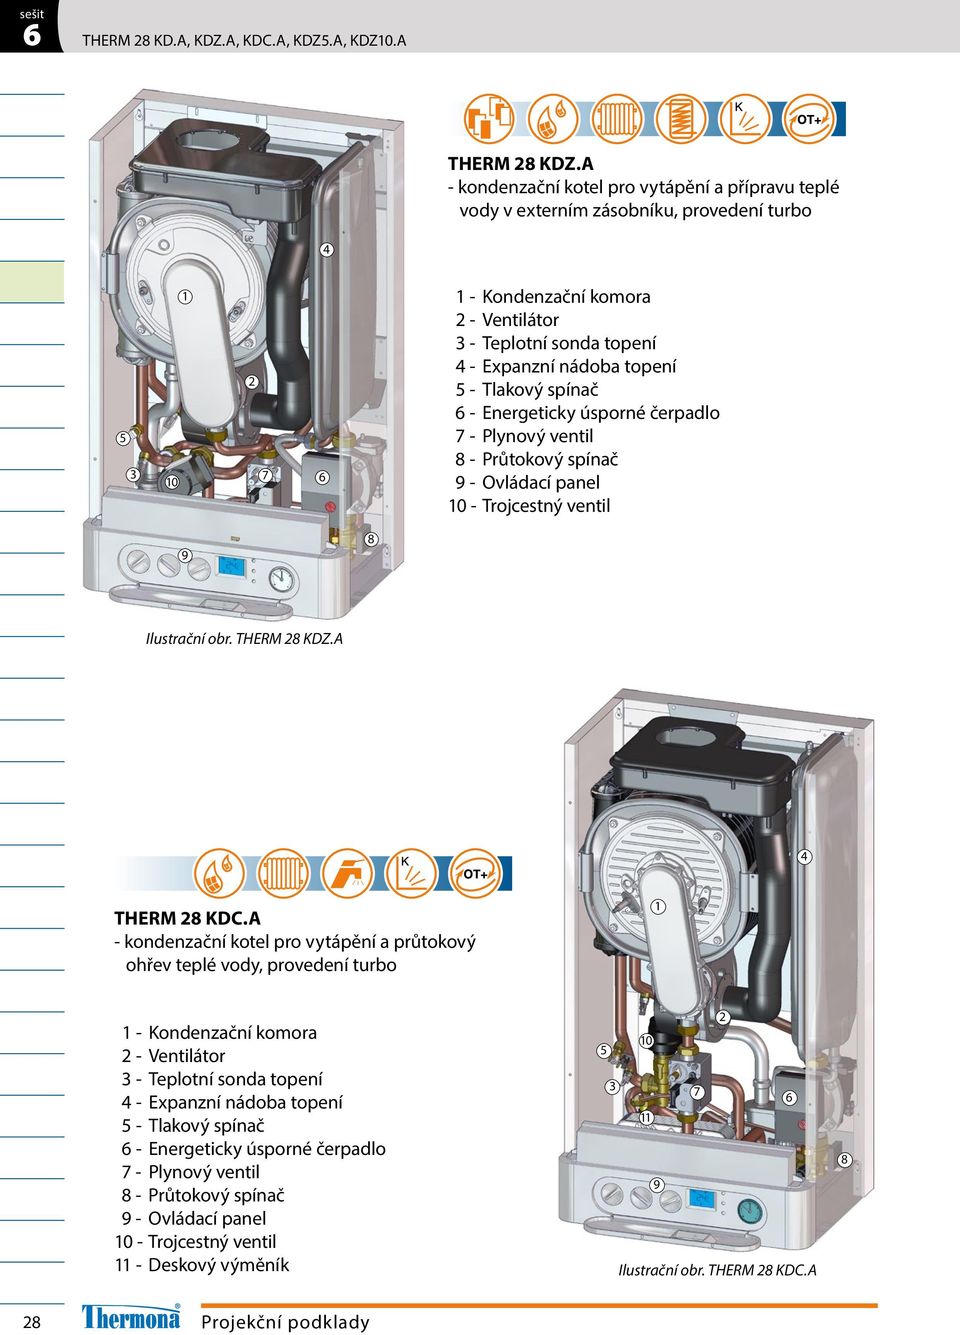 Tlakový spínač - Energeticky úsporné čerpadlo - Plynový ventil - Průtokový spínač - Ovládací panel 0 - Trojcestný ventil Ilustrační obr. THERM KDZ.A THERM KDC.